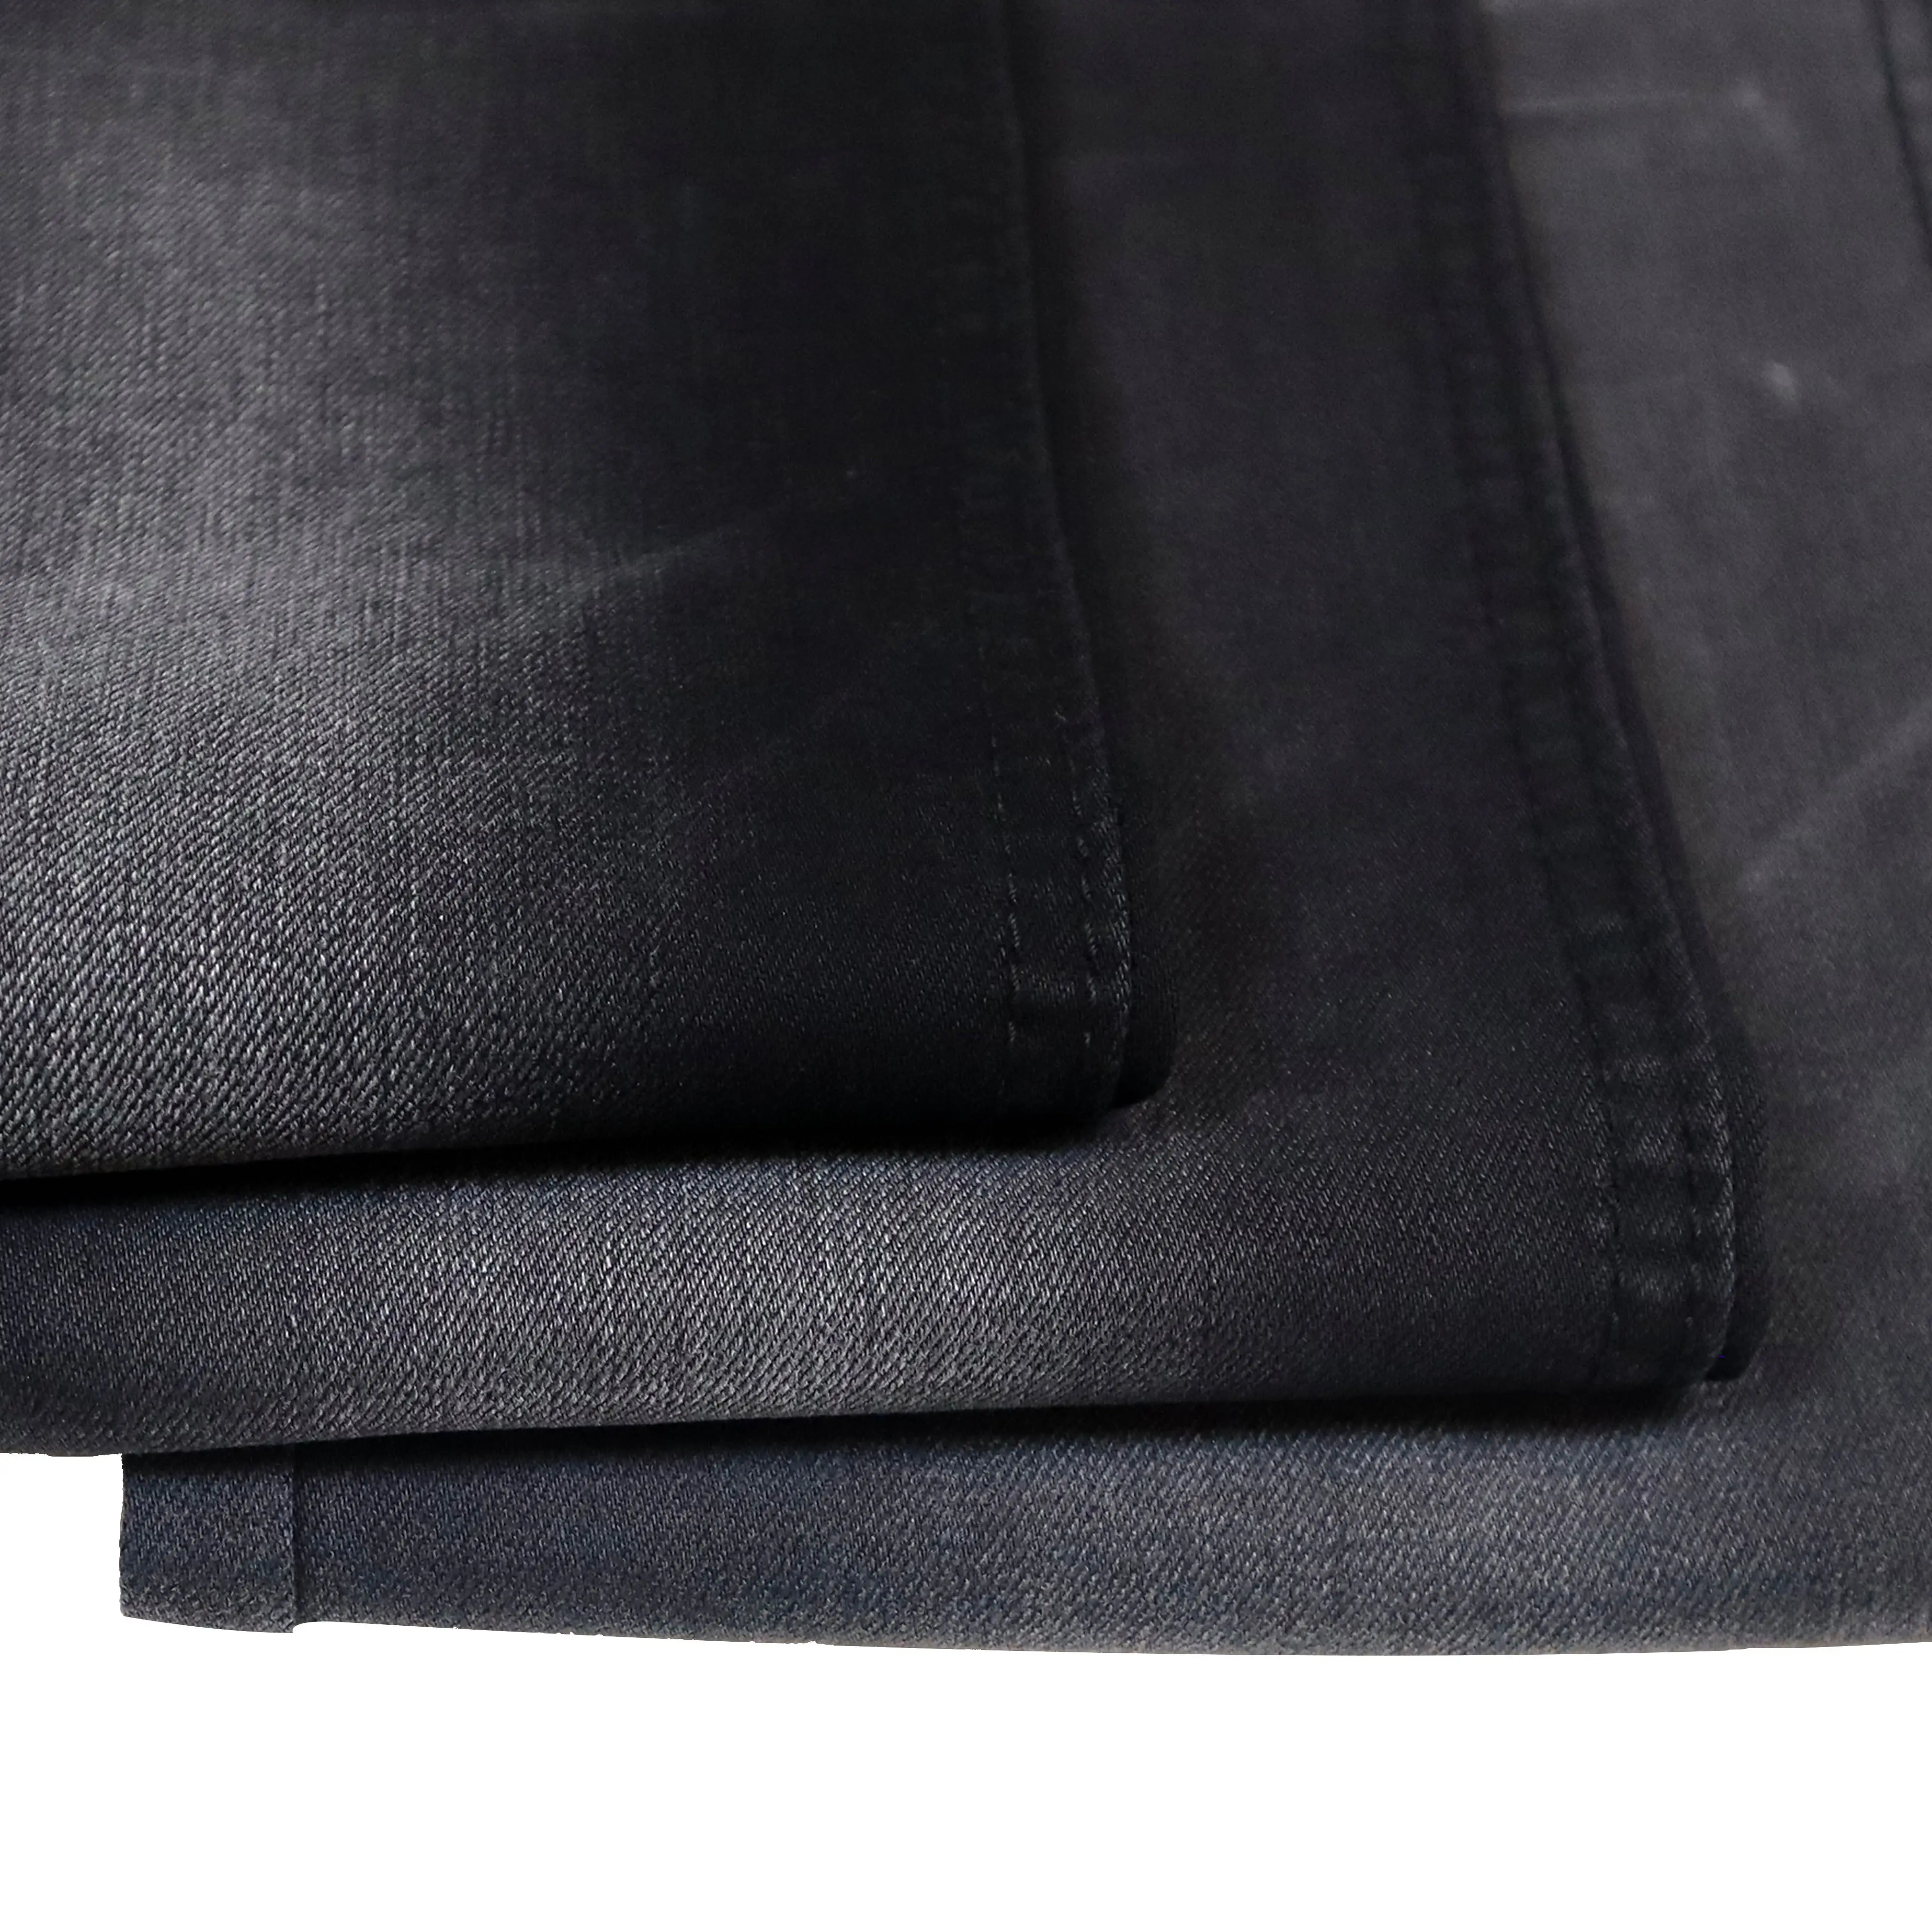 LS-3392 DDK Professionnel 72% coton 24% polyester 3% rayonne Denim Tissu Pour Jeans Avec Bon Prix